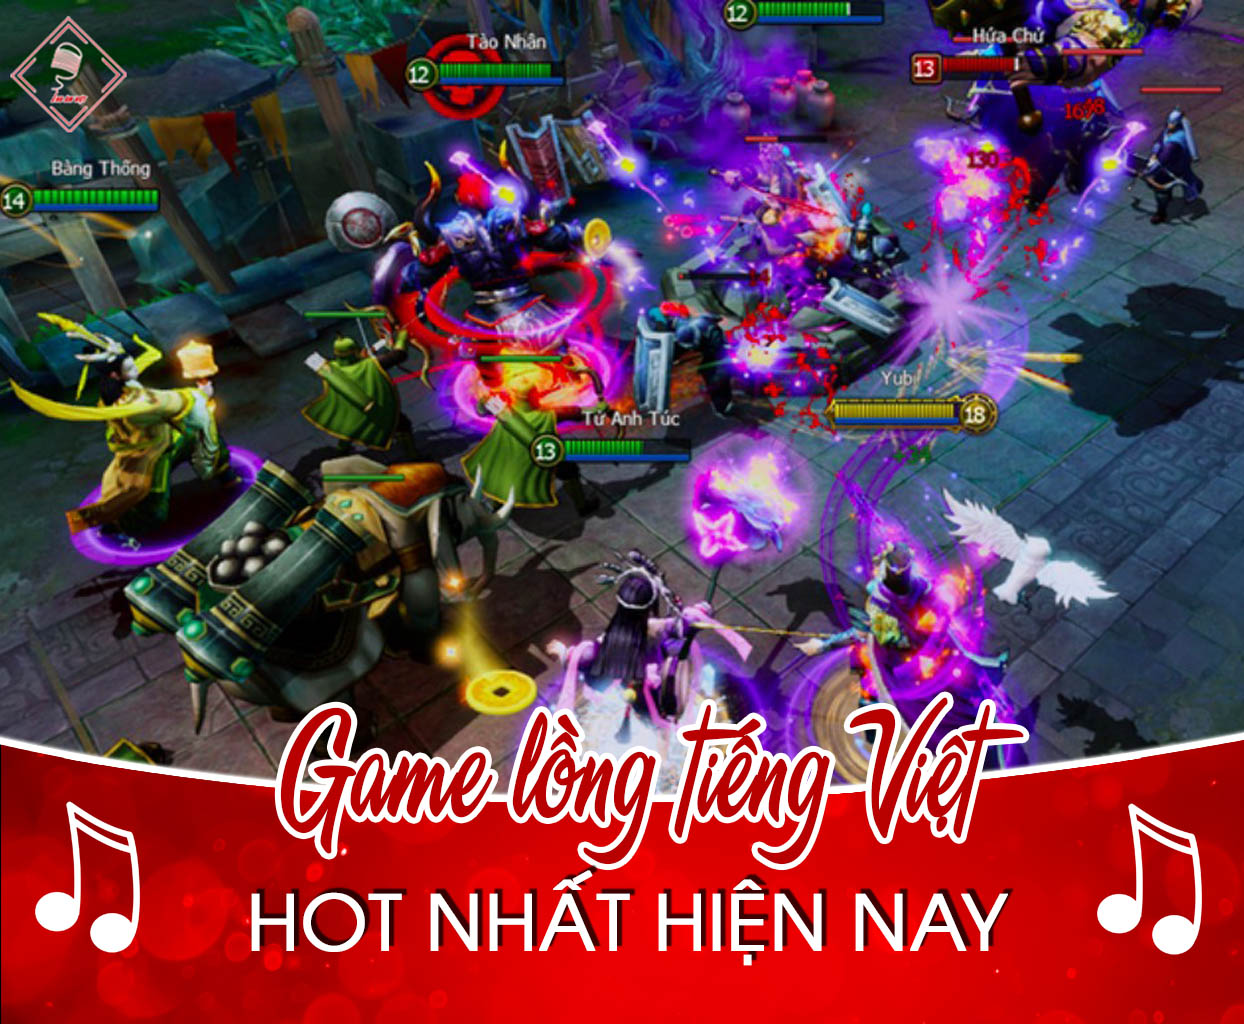 Danh sách các tựa game lồng tiếng Việt hot nhất hiện nay